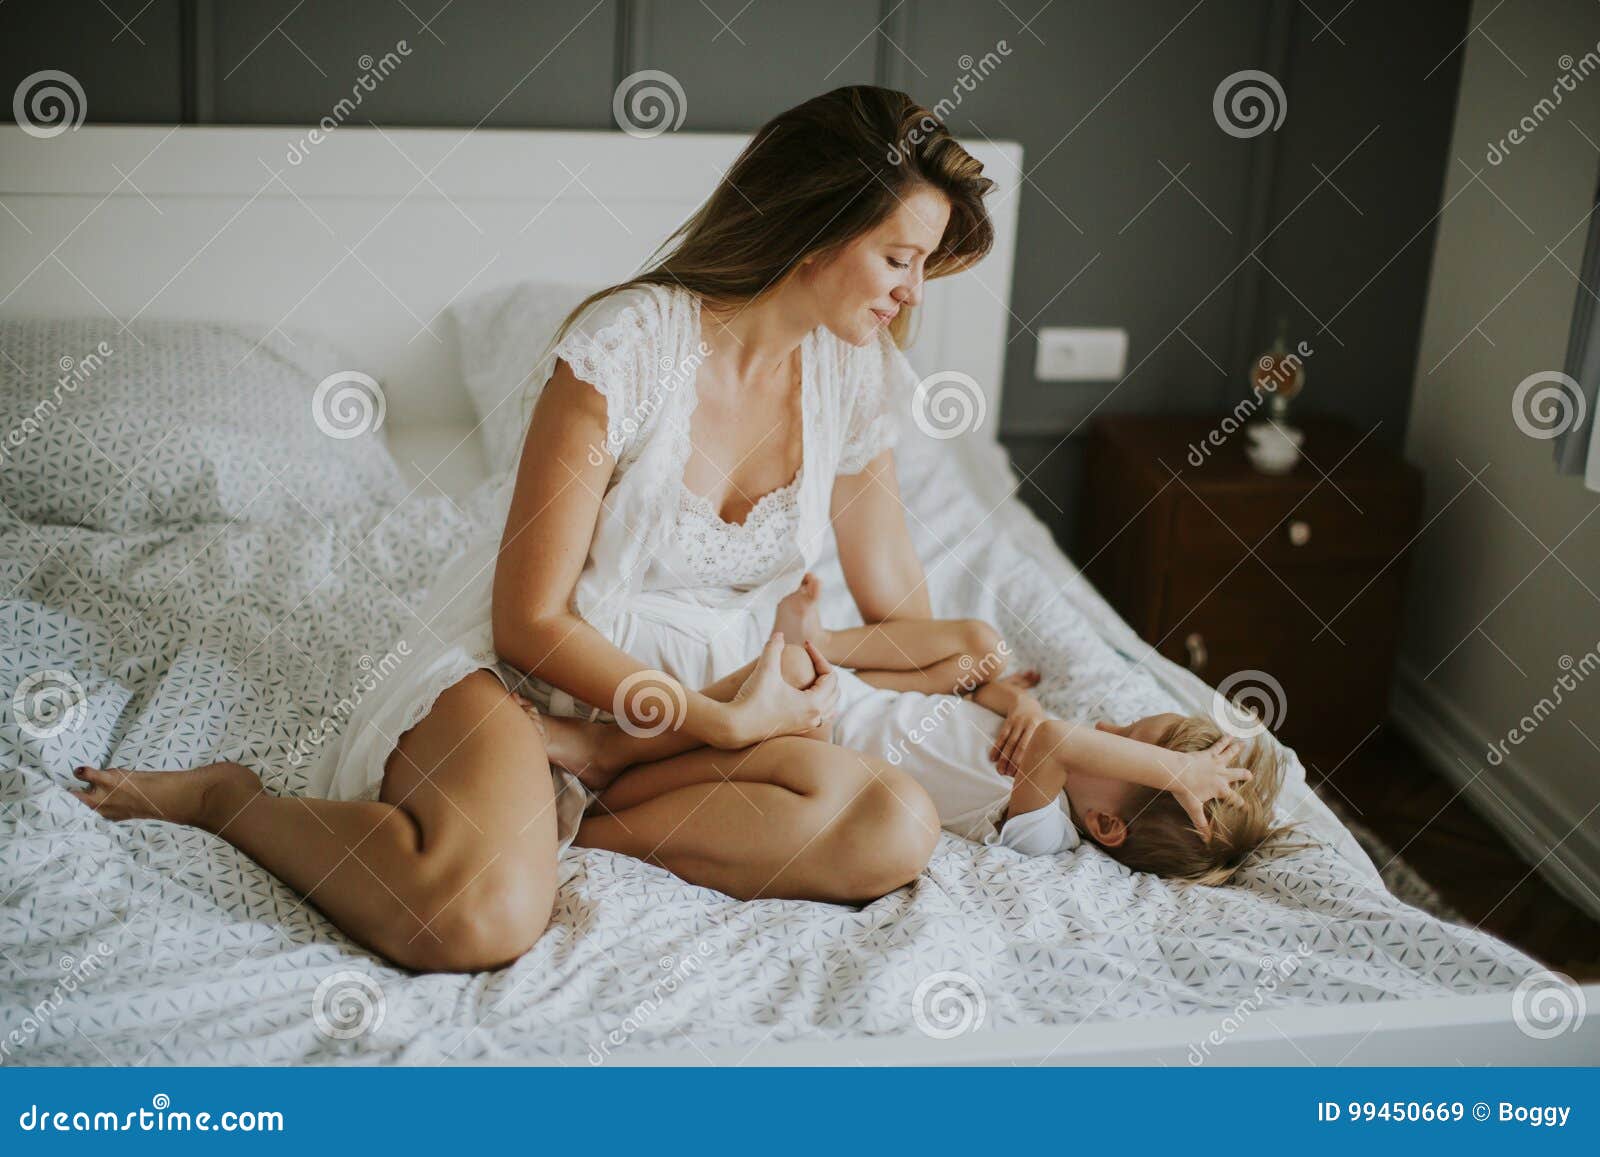 Молодые мамы в постели. Мать у кровати. Мамочки на кровати. Женщина и мальчик в постели. Зрелые мамы в постели